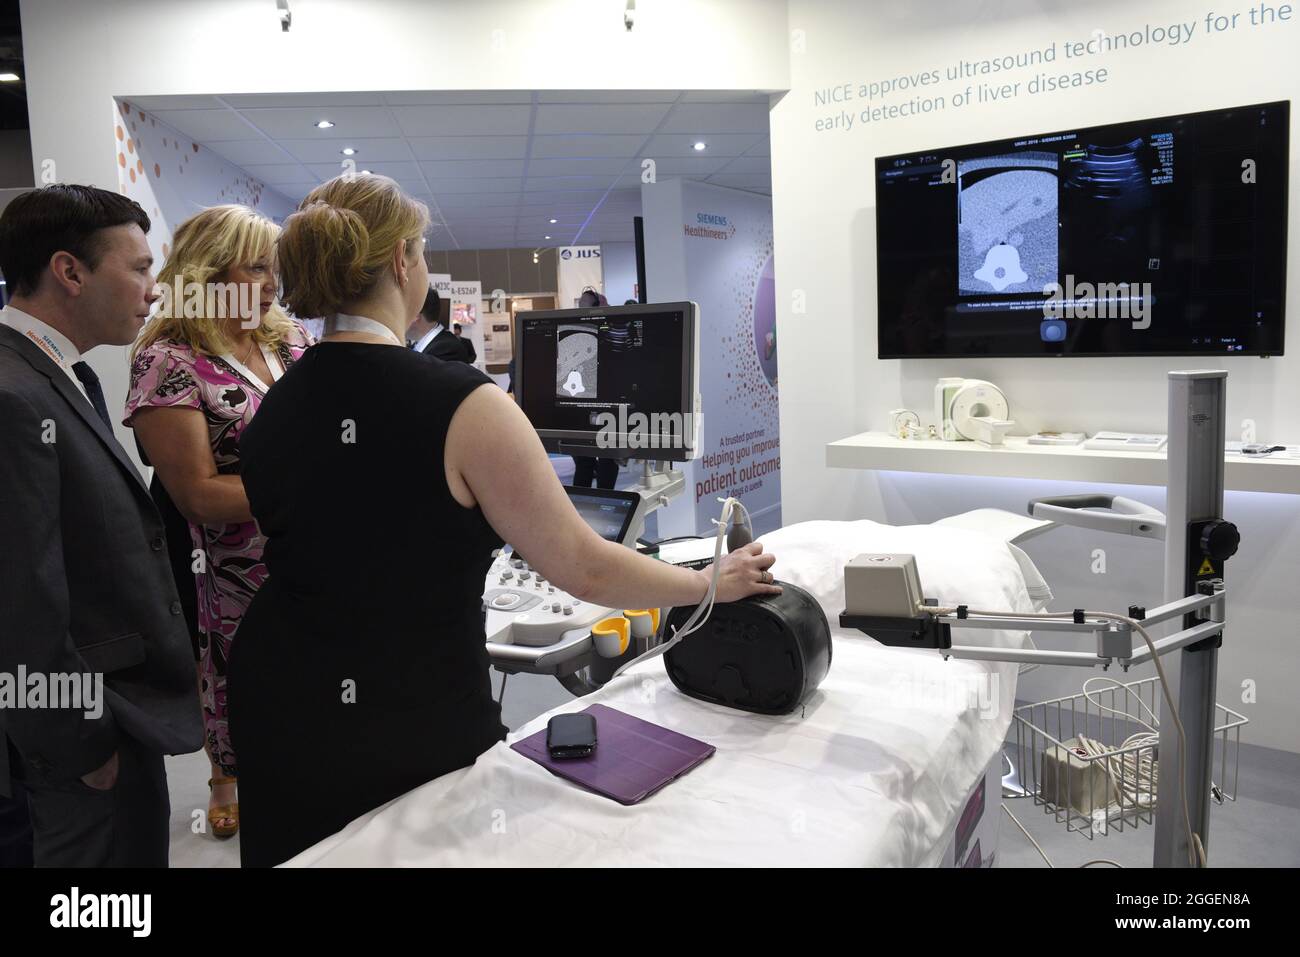 Demonstration von Ultraschalluntersuchungen auf einer Industriemesse. Siemans Ultraschall-Medizintechnik zur Früherkennung von Lebererkrankungen. Stockfoto